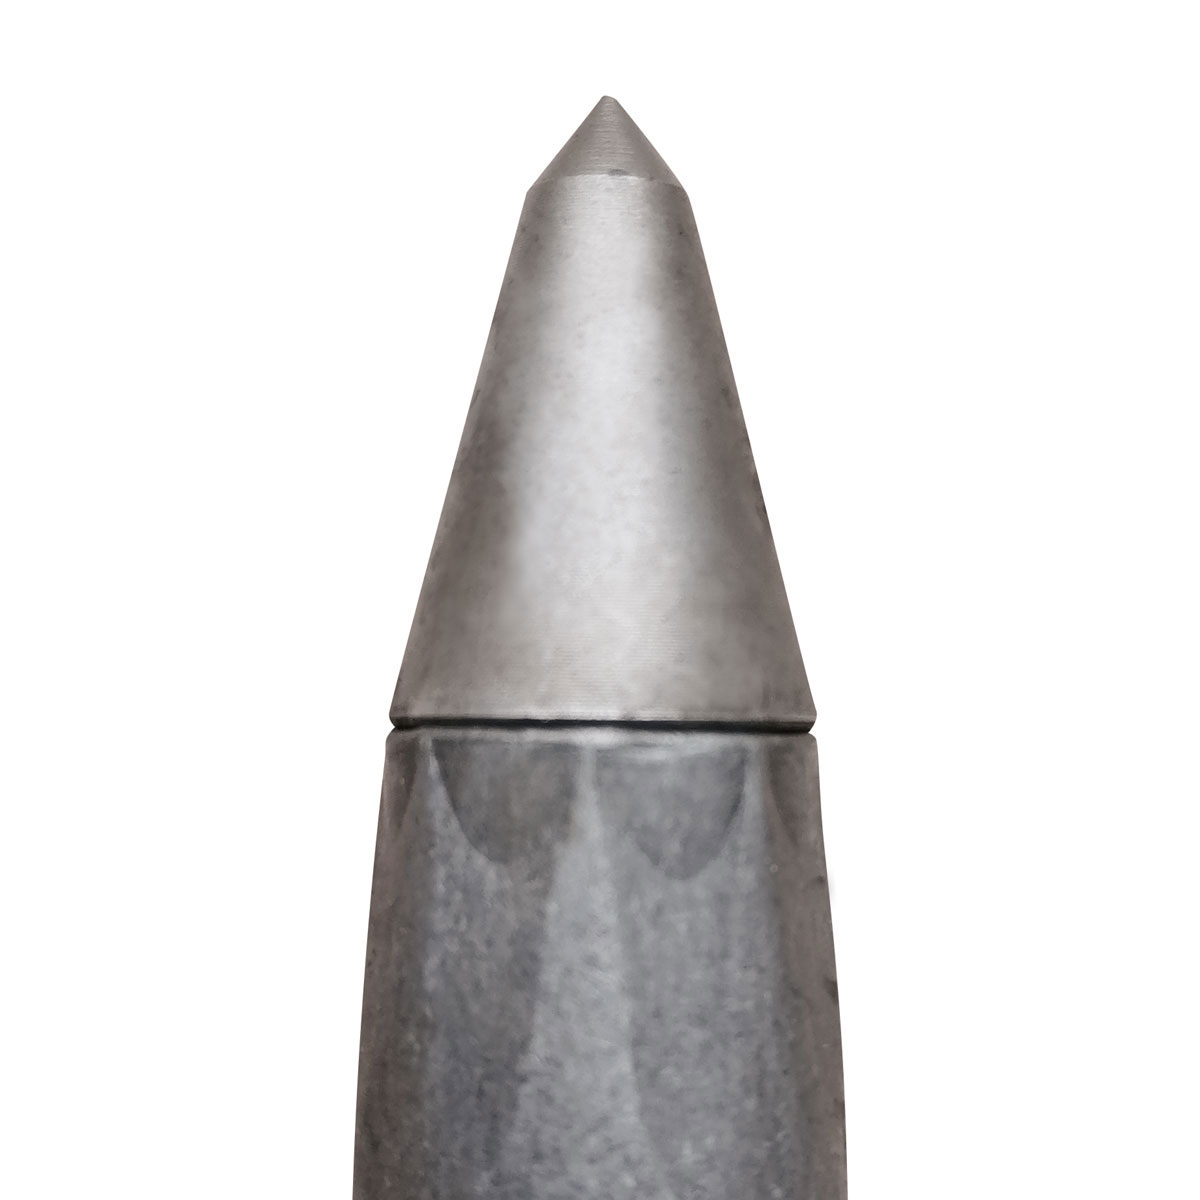 Eisenvermessungsrohre 3/8" - Länge 400 mm mit Stahlspitze